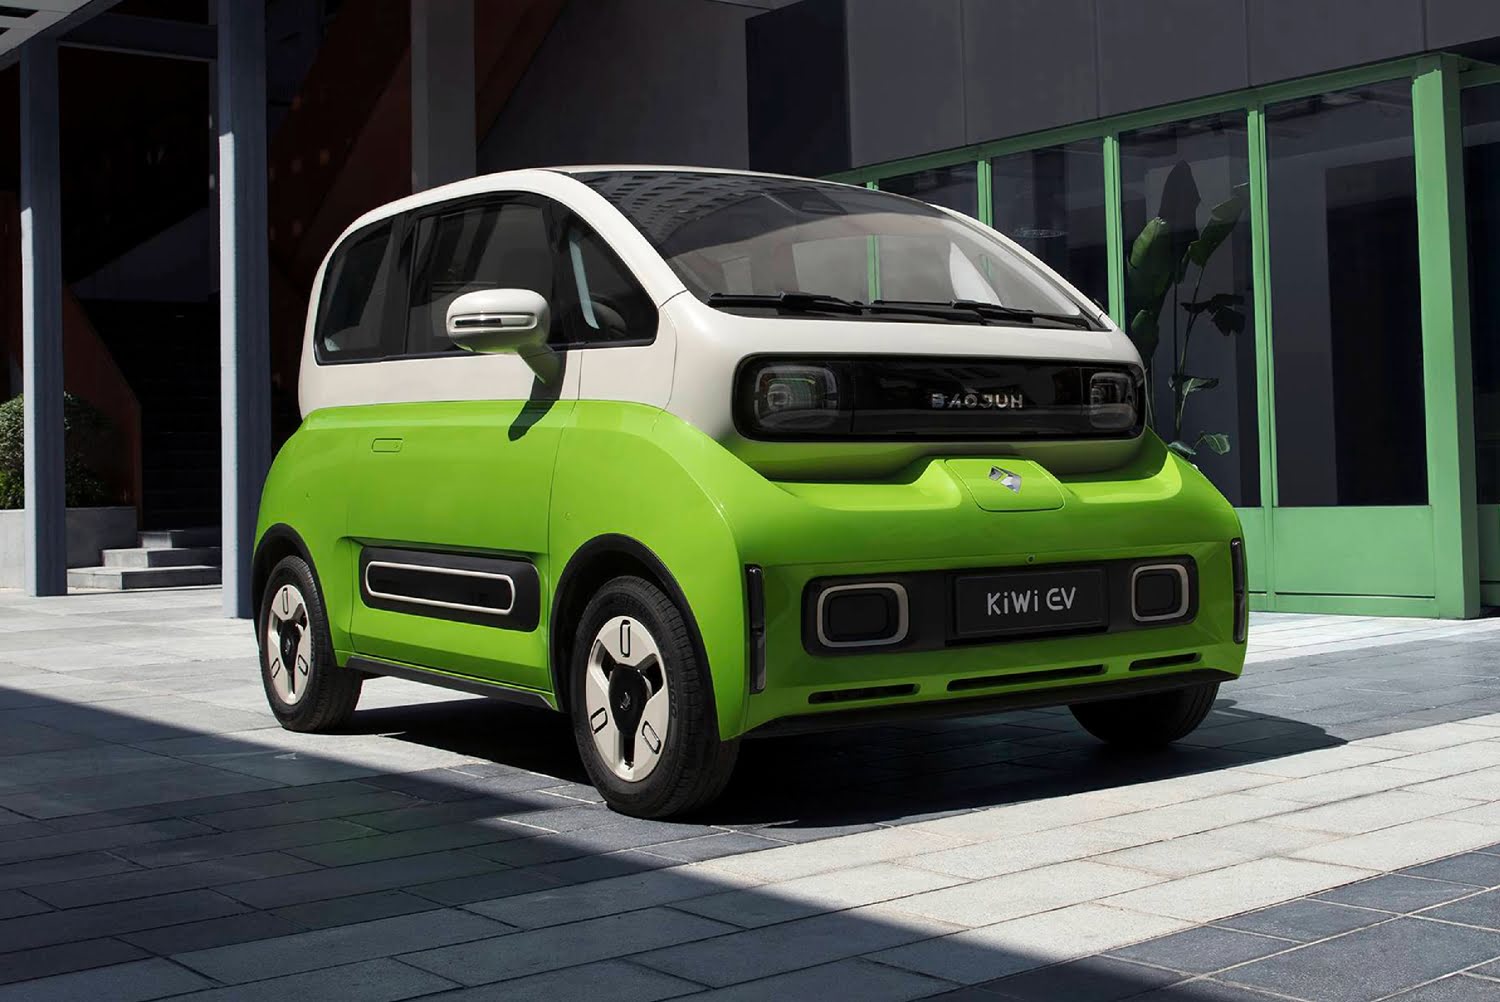 GM’s AllNew Baojun KiWi EV Driving Range Announced